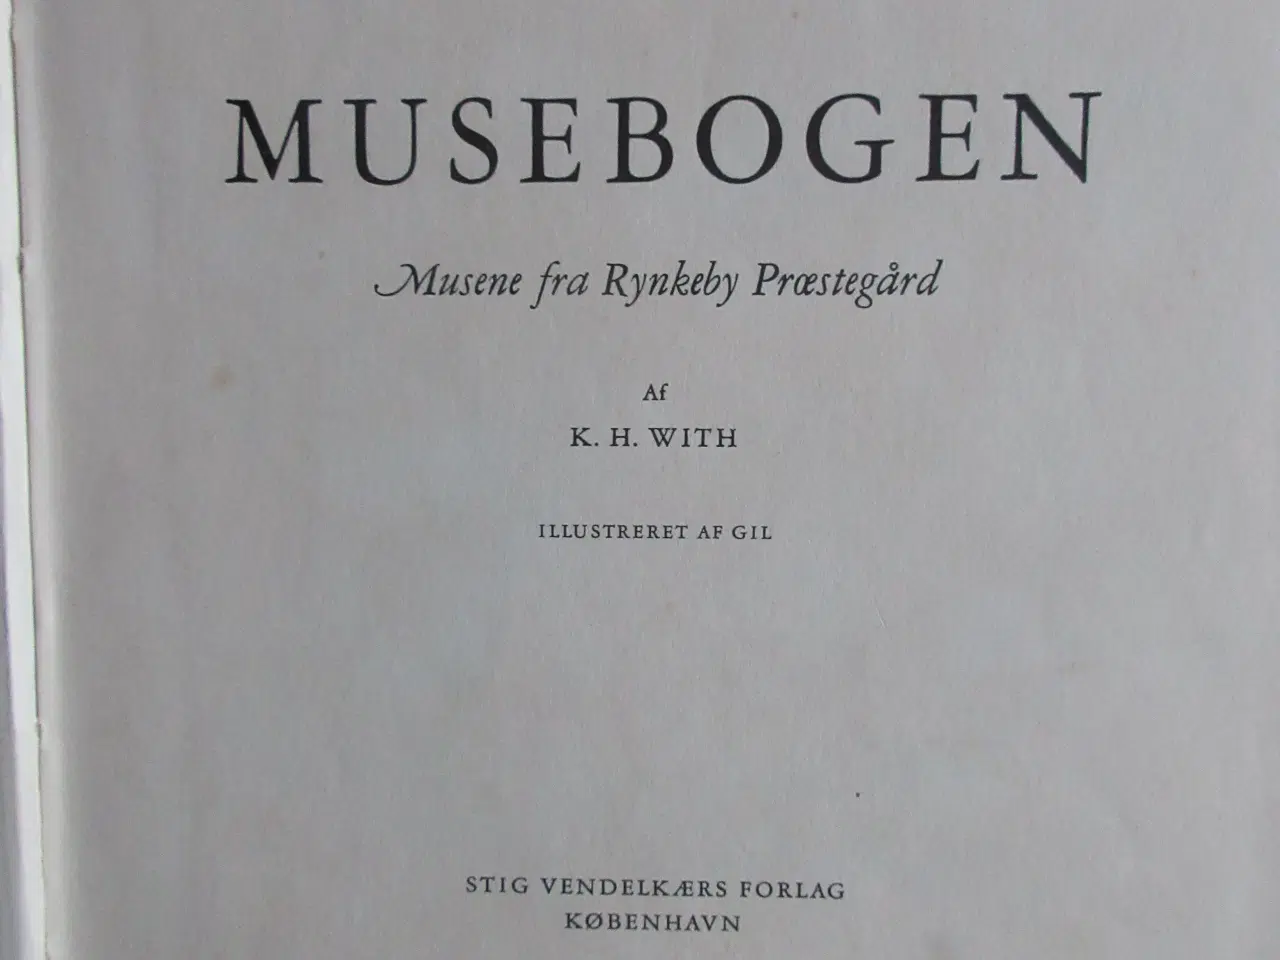 Billede 2 - Musebogen (Musene fra Rynkeby præstegård) ;-)